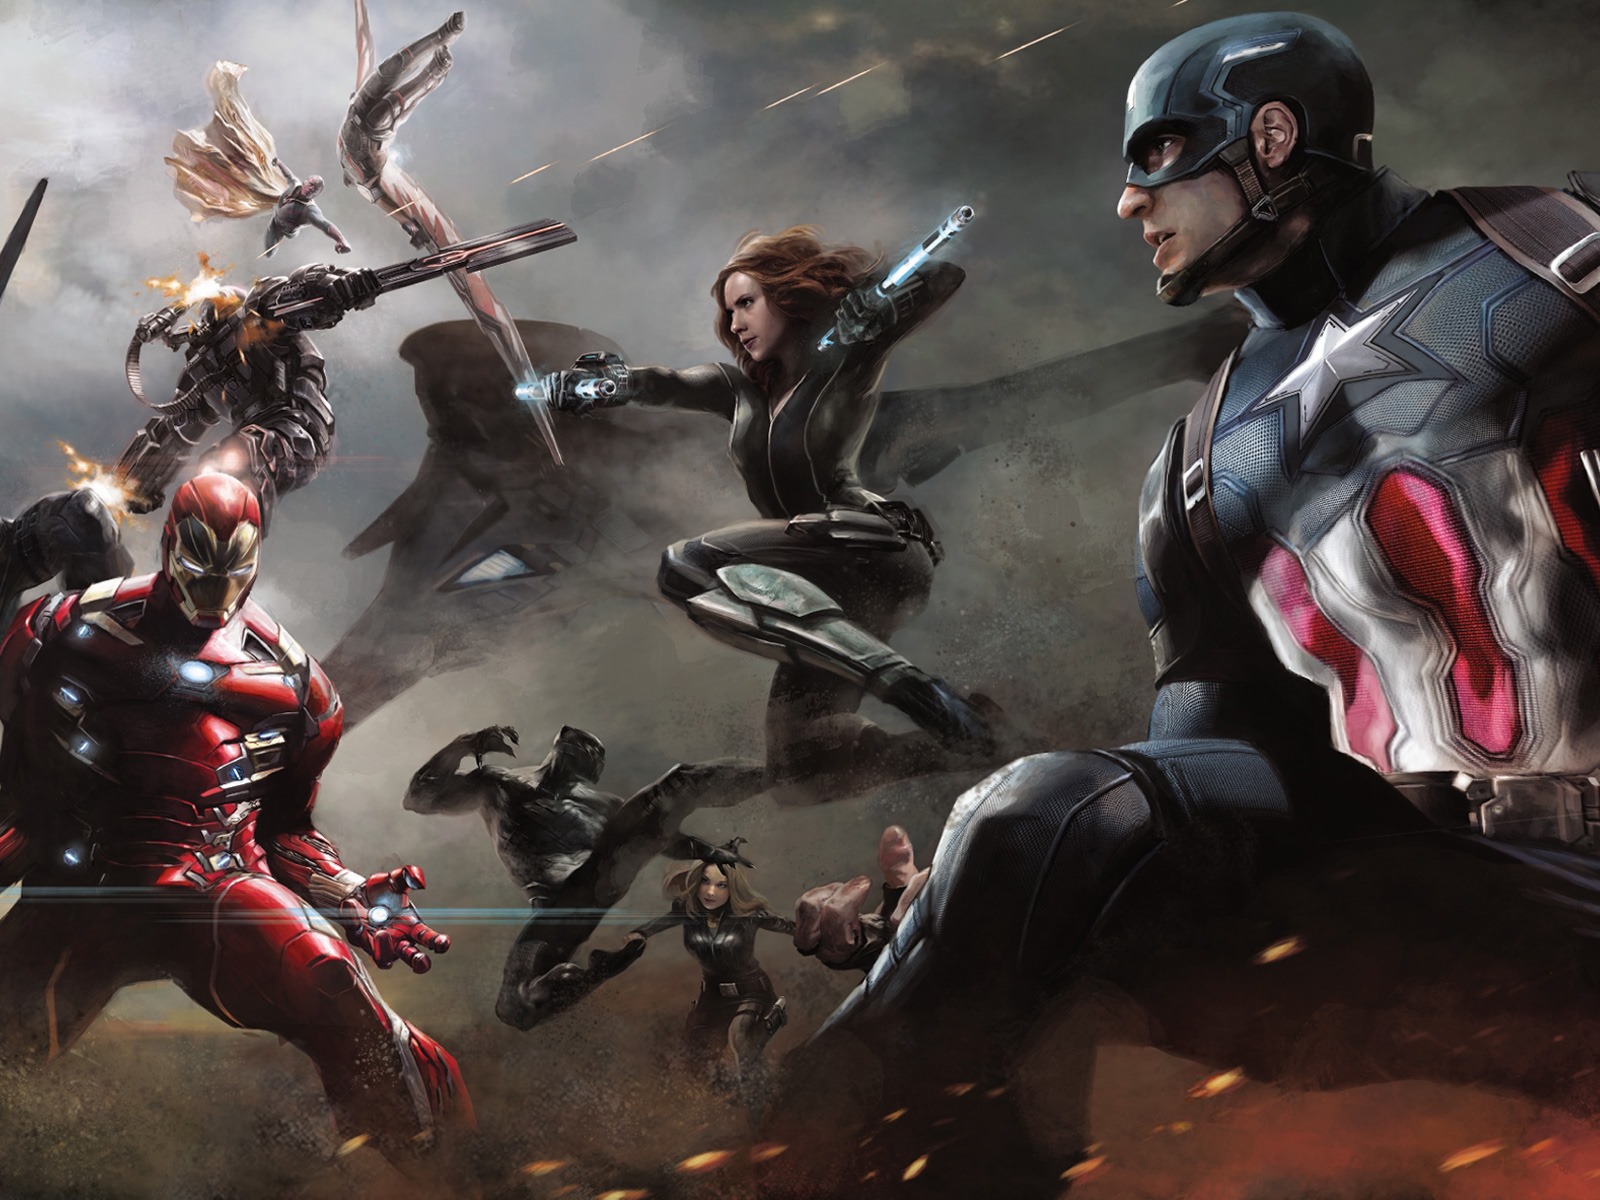 Capitán América: guerra civil, fondos de pantalla de alta definición de películas #3 - 1600x1200